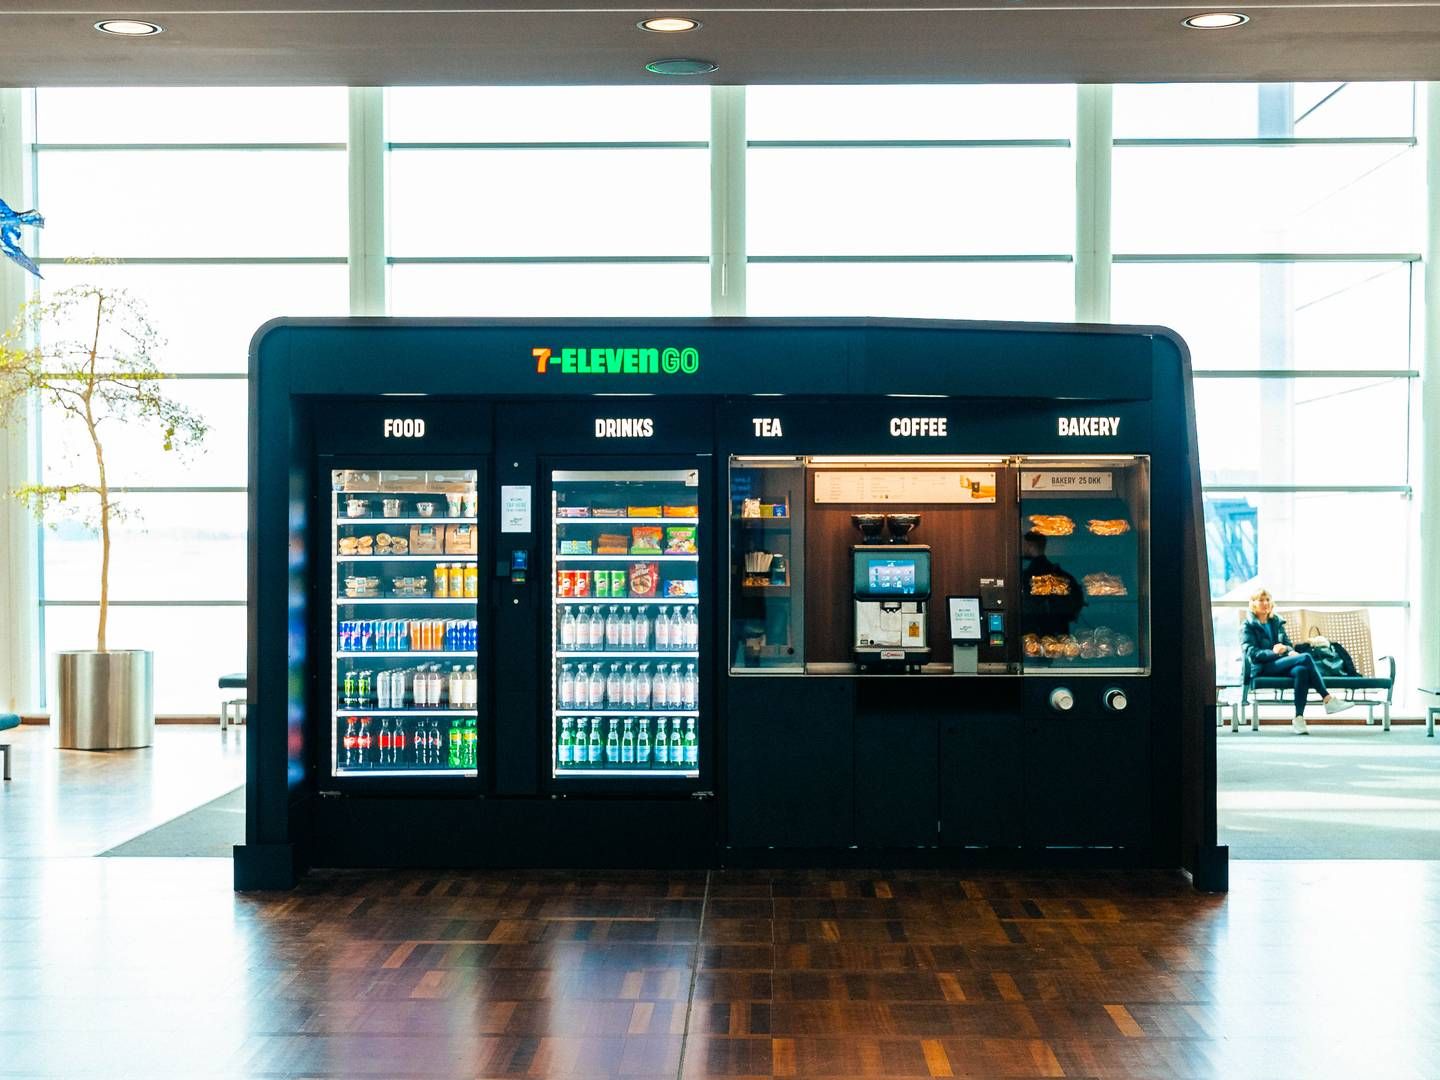 7-Eleven råder over 89 selvbetjeningsautomater i Københavns Lufthavn, der eksempelvis tilbyder nakkepuder til flyveturen, sandwiches, wraps og kaffe i en tredjedel af automaterne. | Foto: 7-eleven / Pr